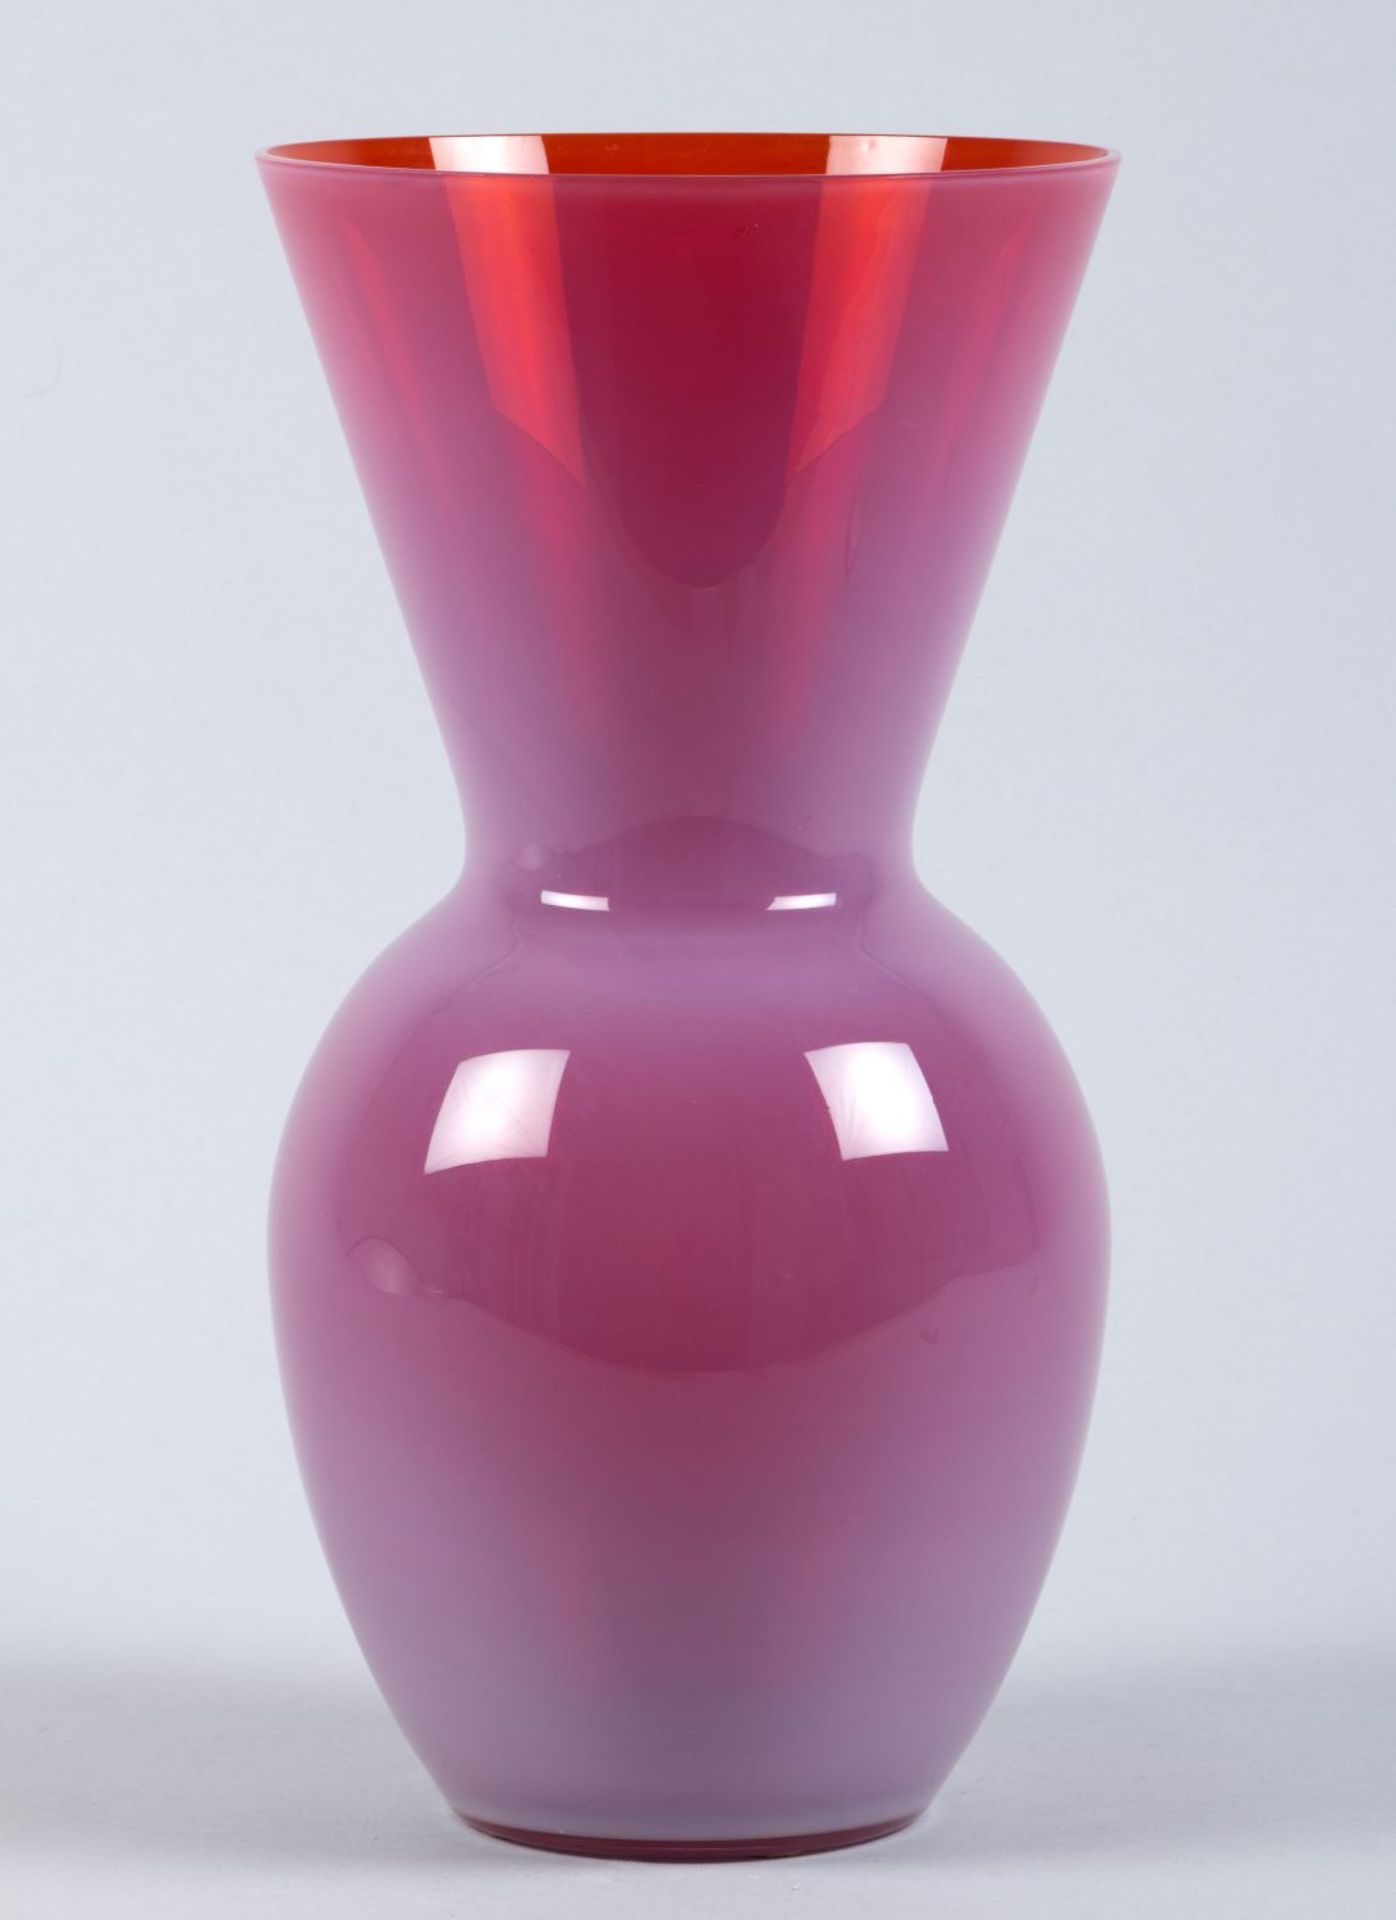 VaseFarbloses Glas, milchweiß und rot unterfangen. Ovoider Korpus mit breitem trichterförmigen Hals.